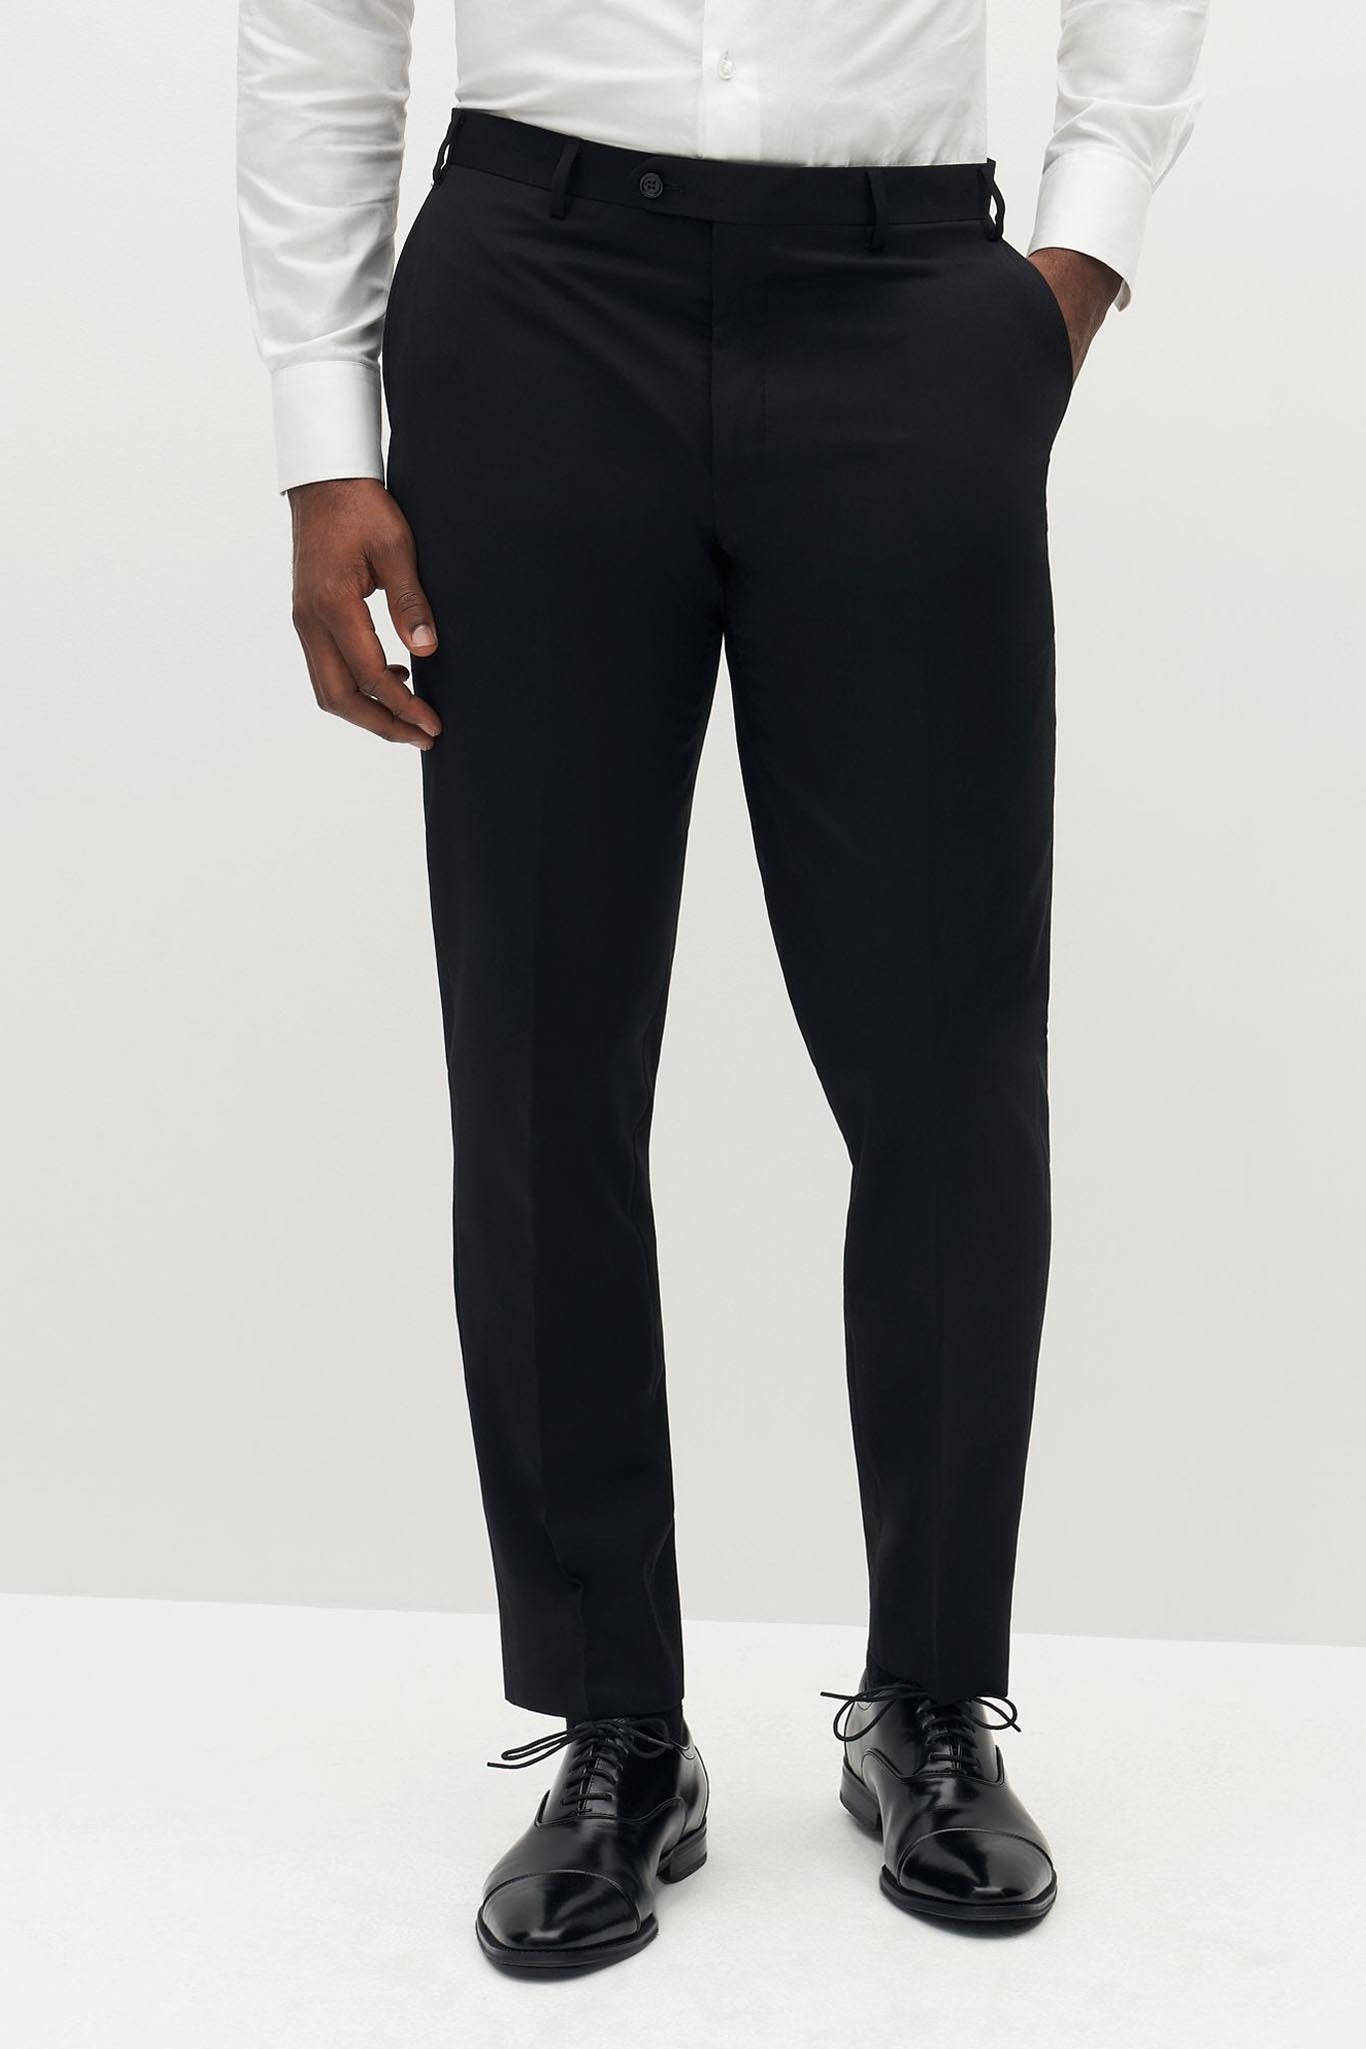 Classic Black Suit Pants by SuitShop